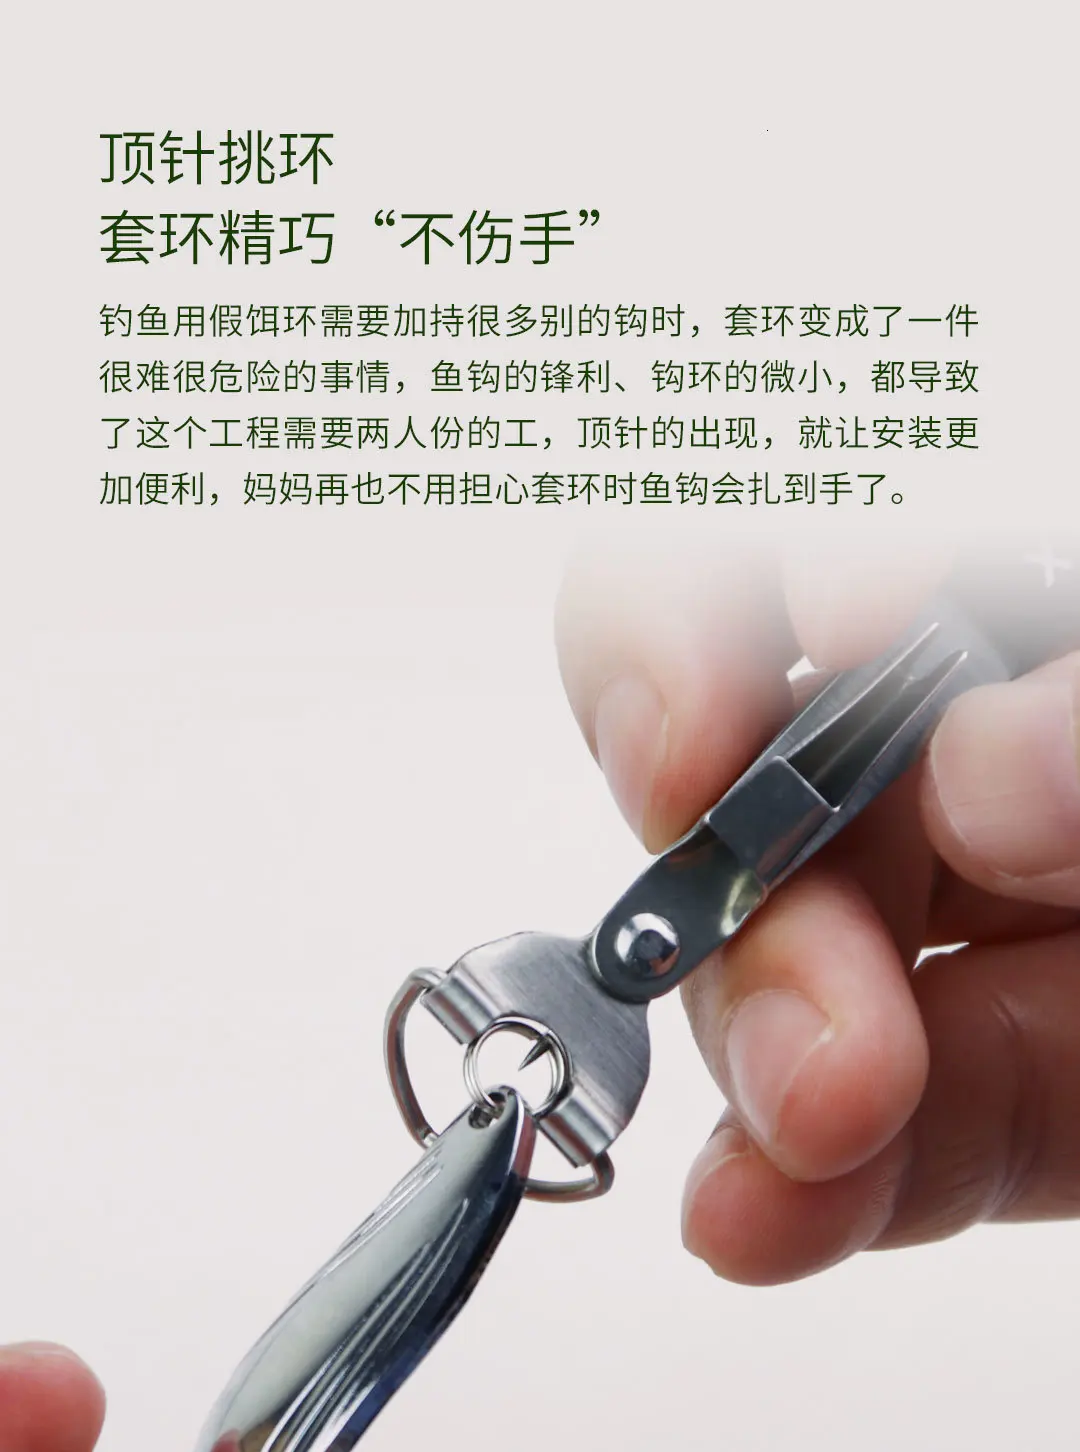 Xiaomi Yue Du портативный многофункциональный инструмент для рыболовной привязки, проволочное крепление, резак для проволоки, точильщик, инструмент для рыболовной привязки Xiomi